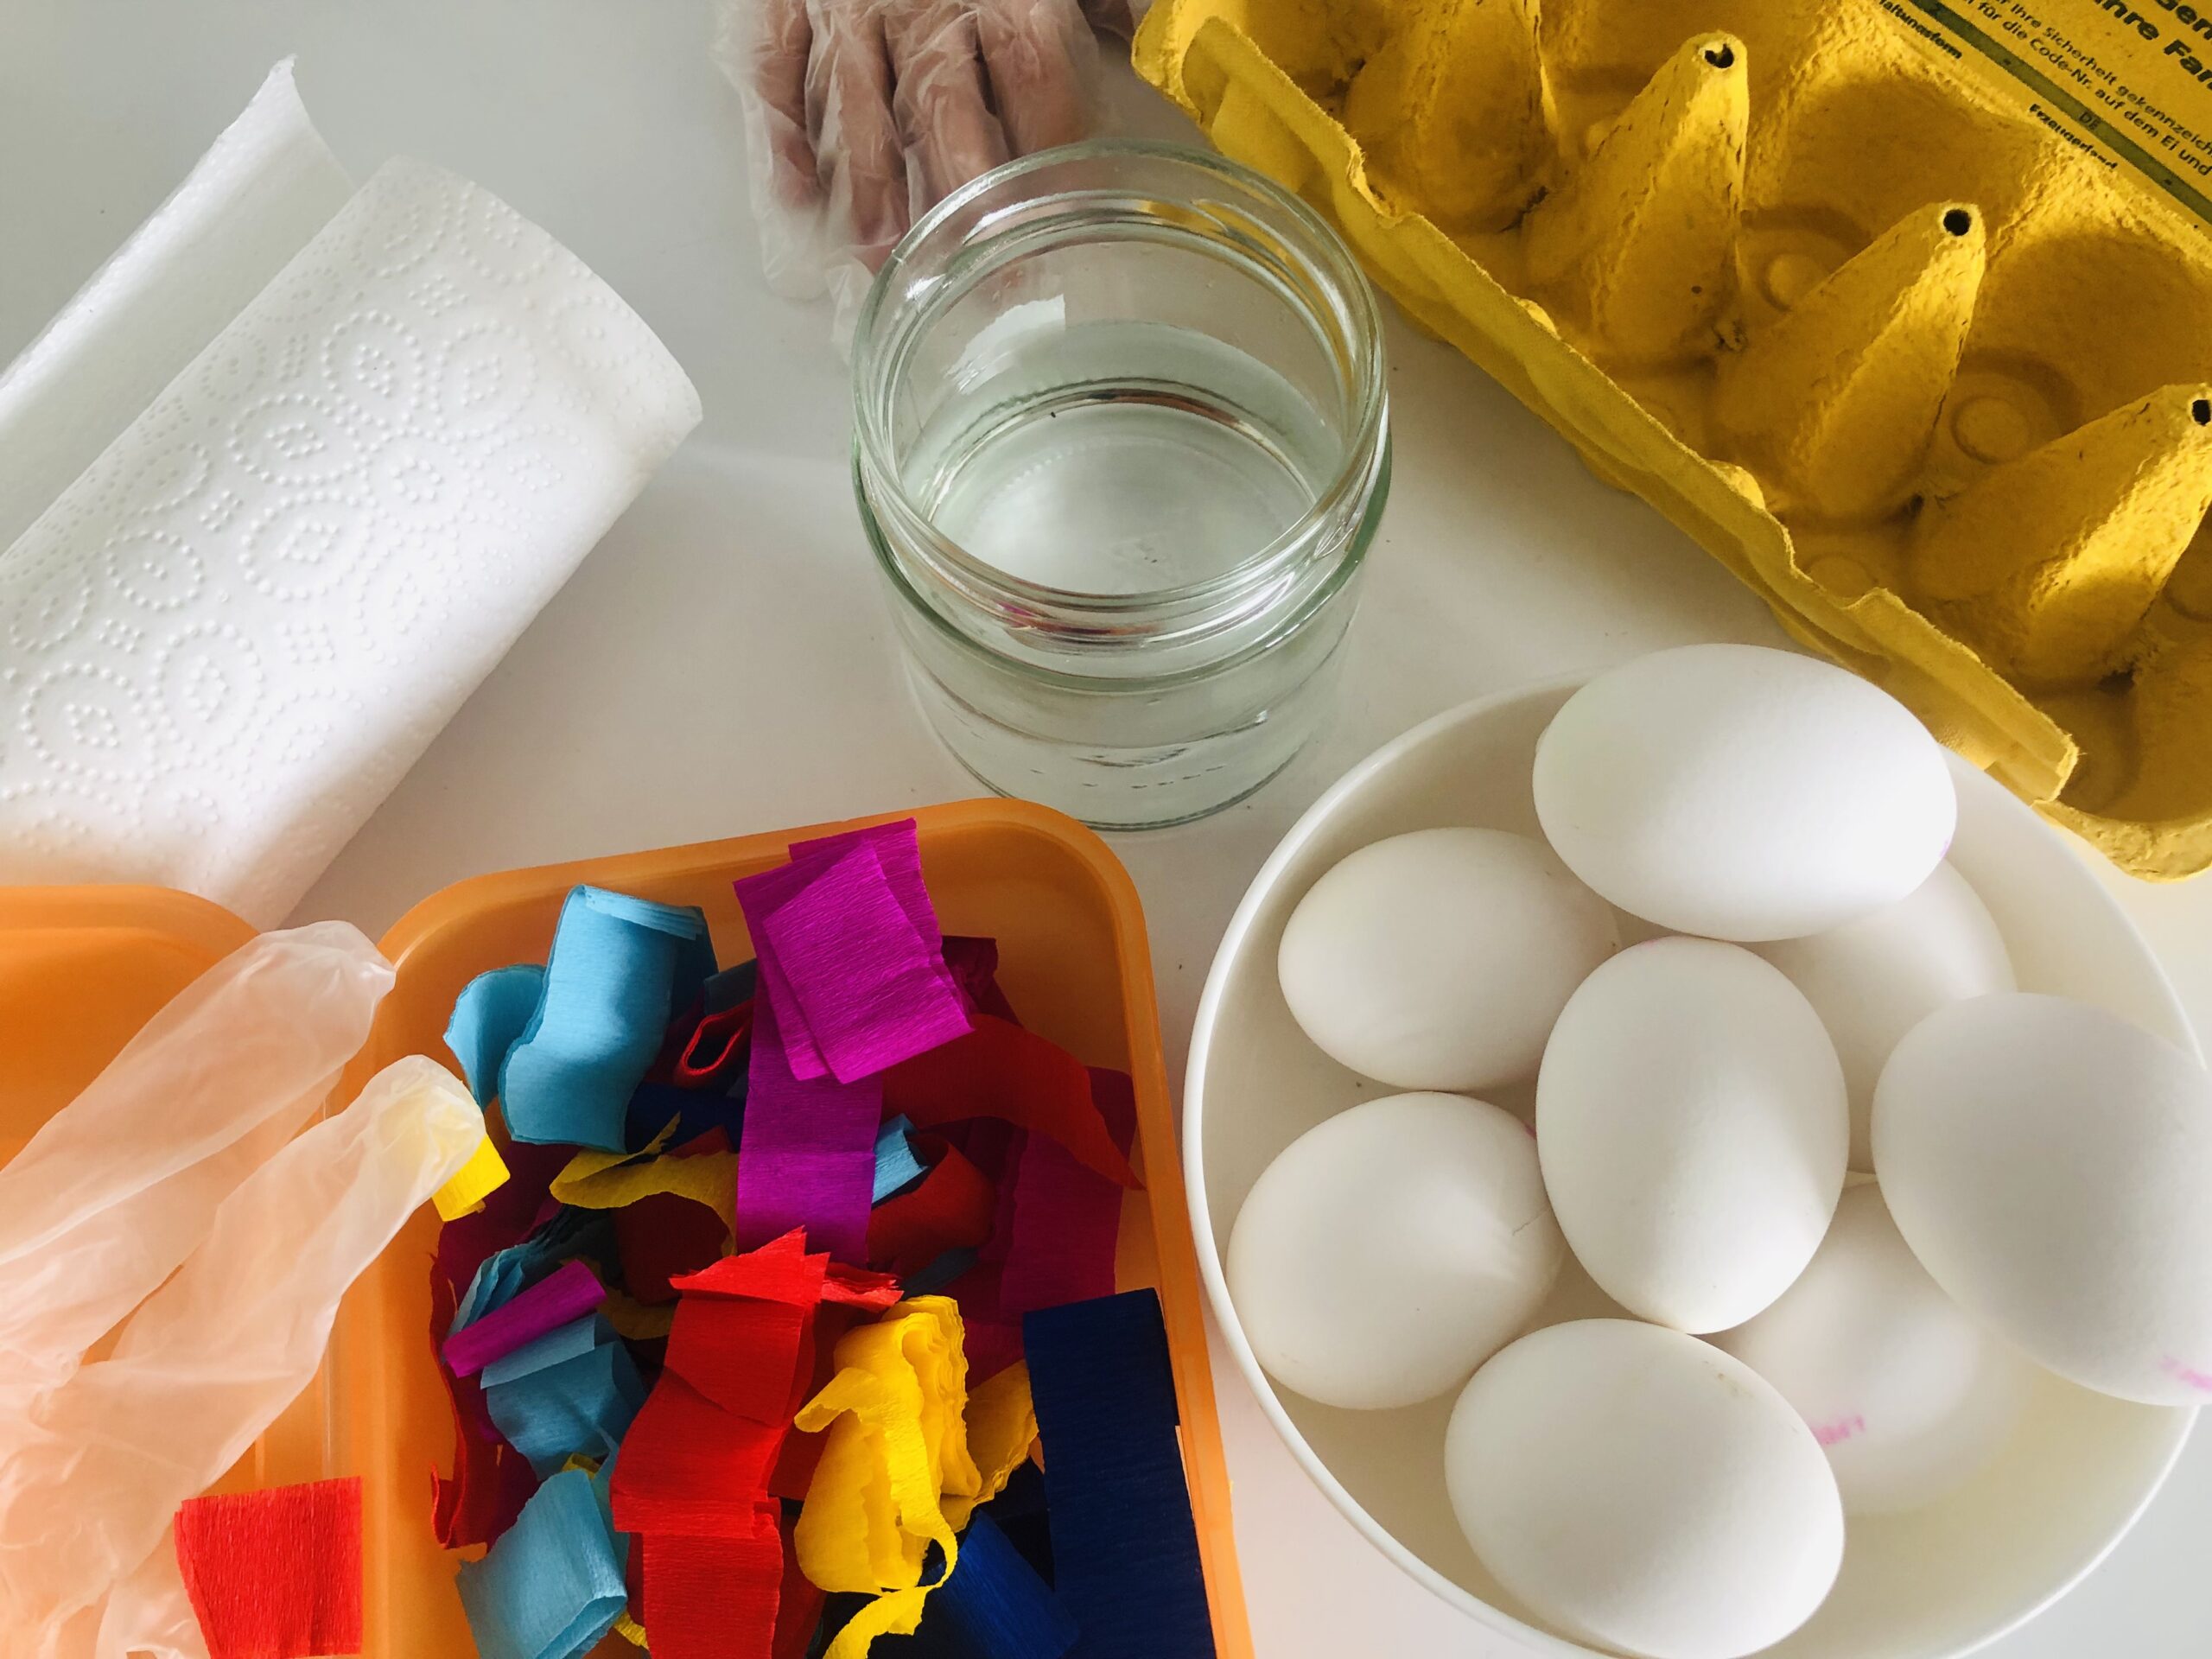 Bild zum Schritt 1 für die Kinder-Beschäftigung: 'Kocht zuerst die Eier (Anleitung zum Eierkochen) und...'